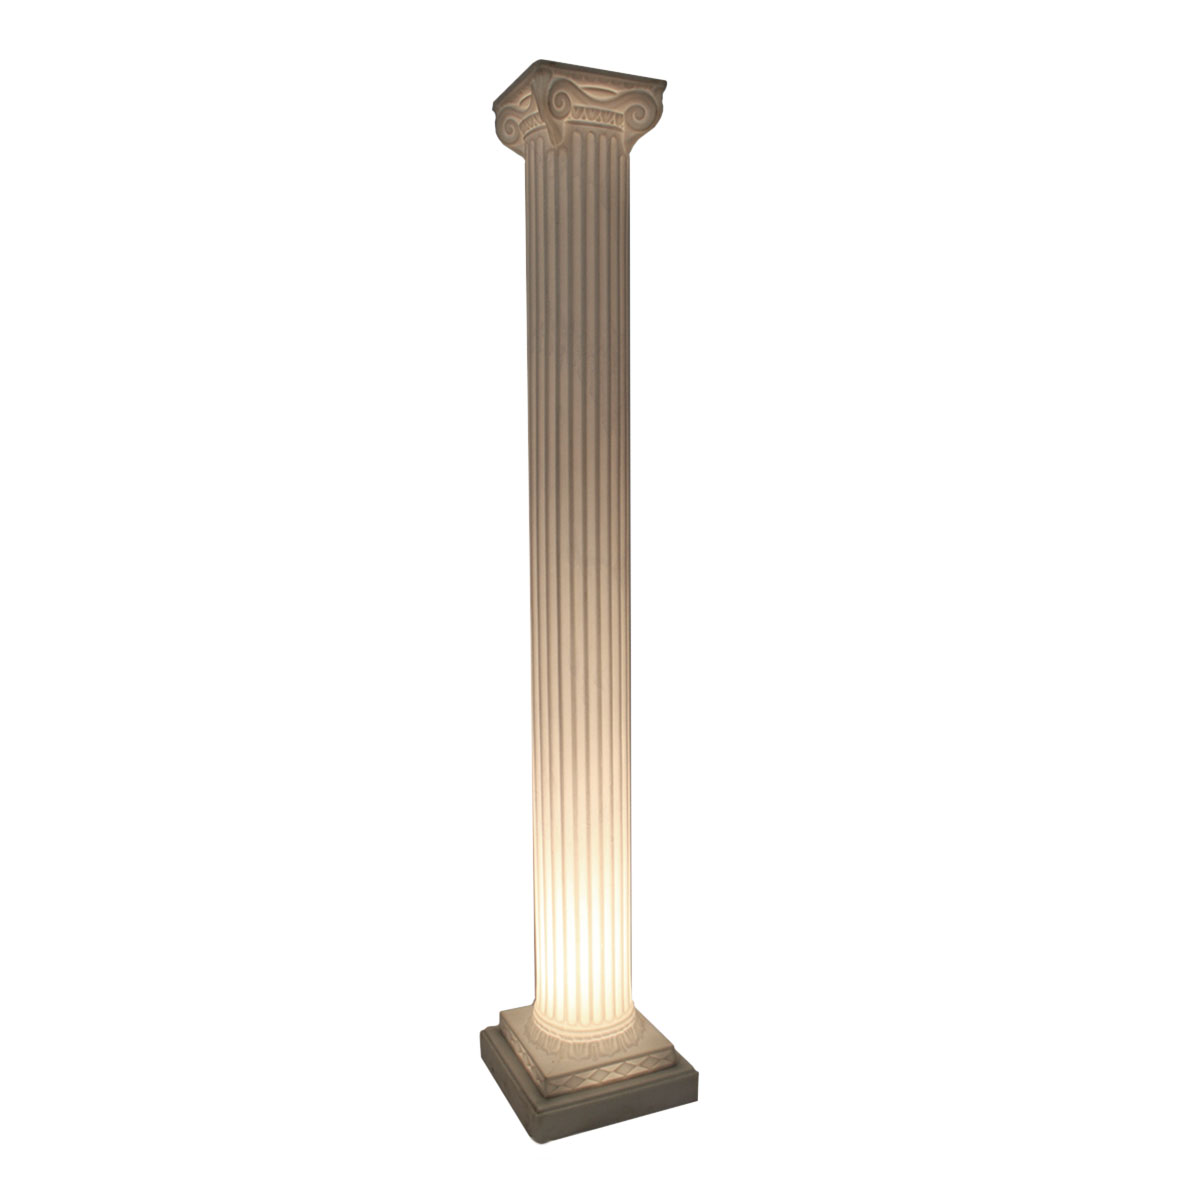 Light Base For Columns